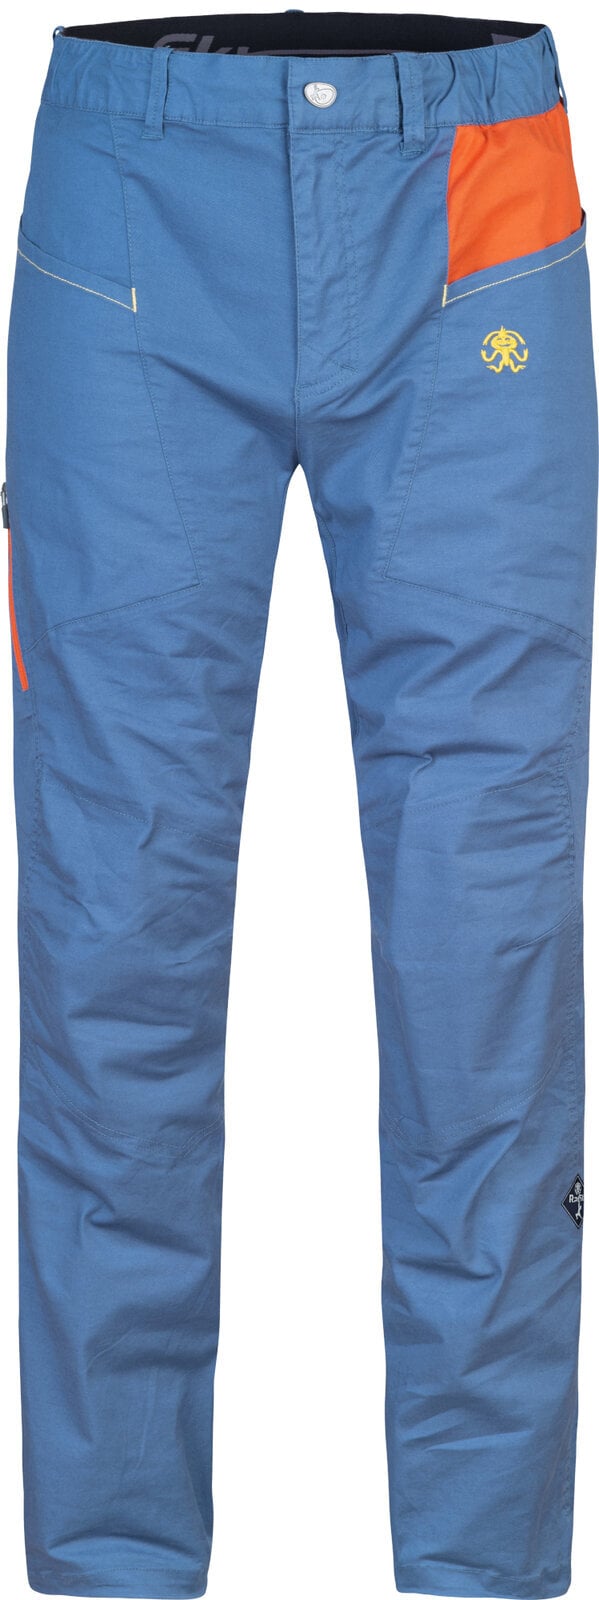 Spodnie outdoorowe Rafiki Crag Man Pants Ensign Blue/Clay XL Spodnie outdoorowe